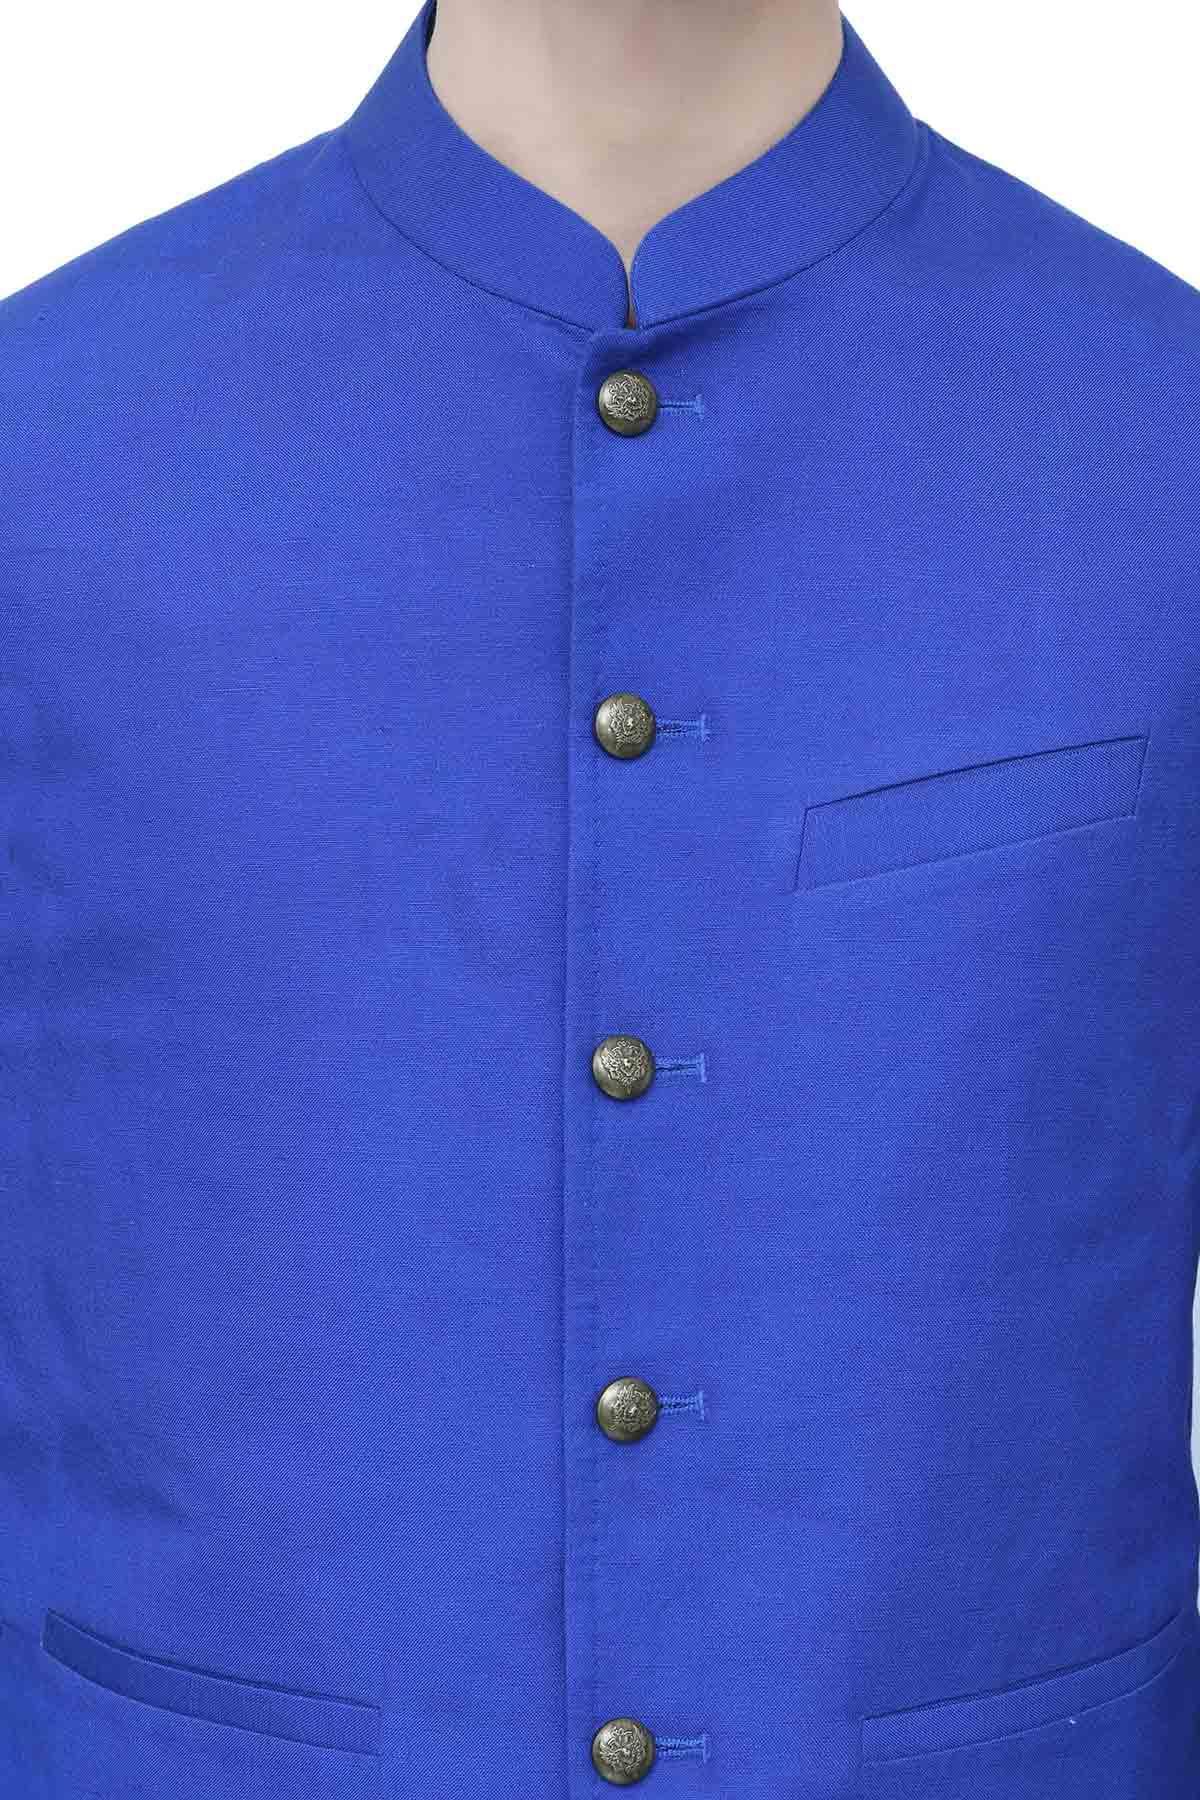 Afroz Waistcoat Royal Blue at Charcoal Clothing